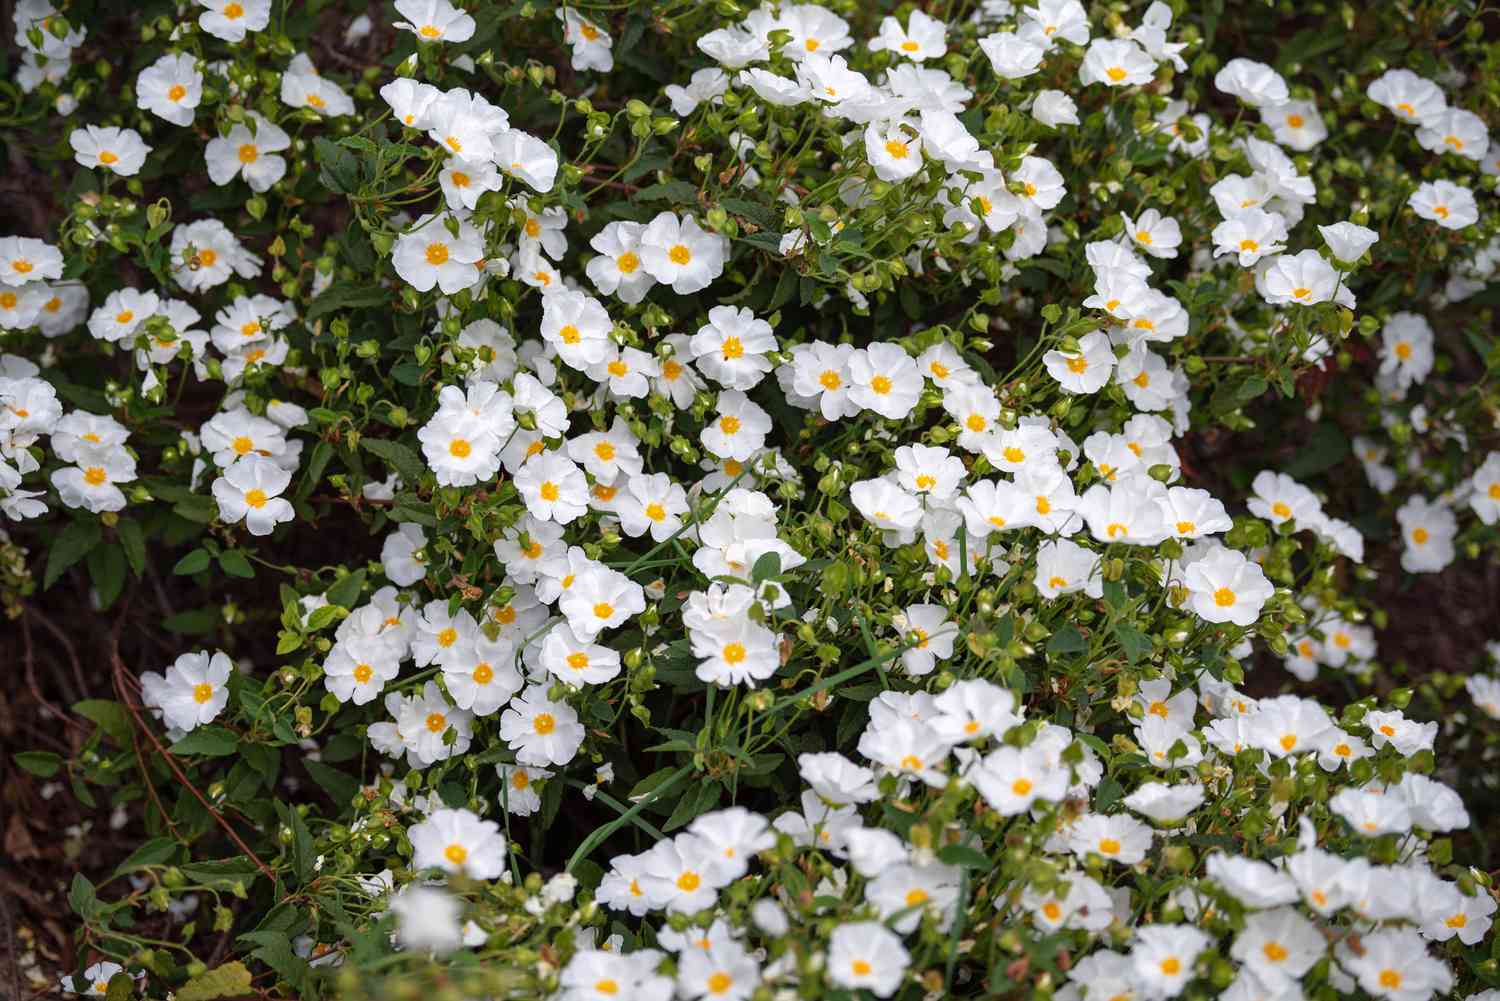 Zistrosenstrauch mit kleinen weißen Blüten mit gelber Mitte